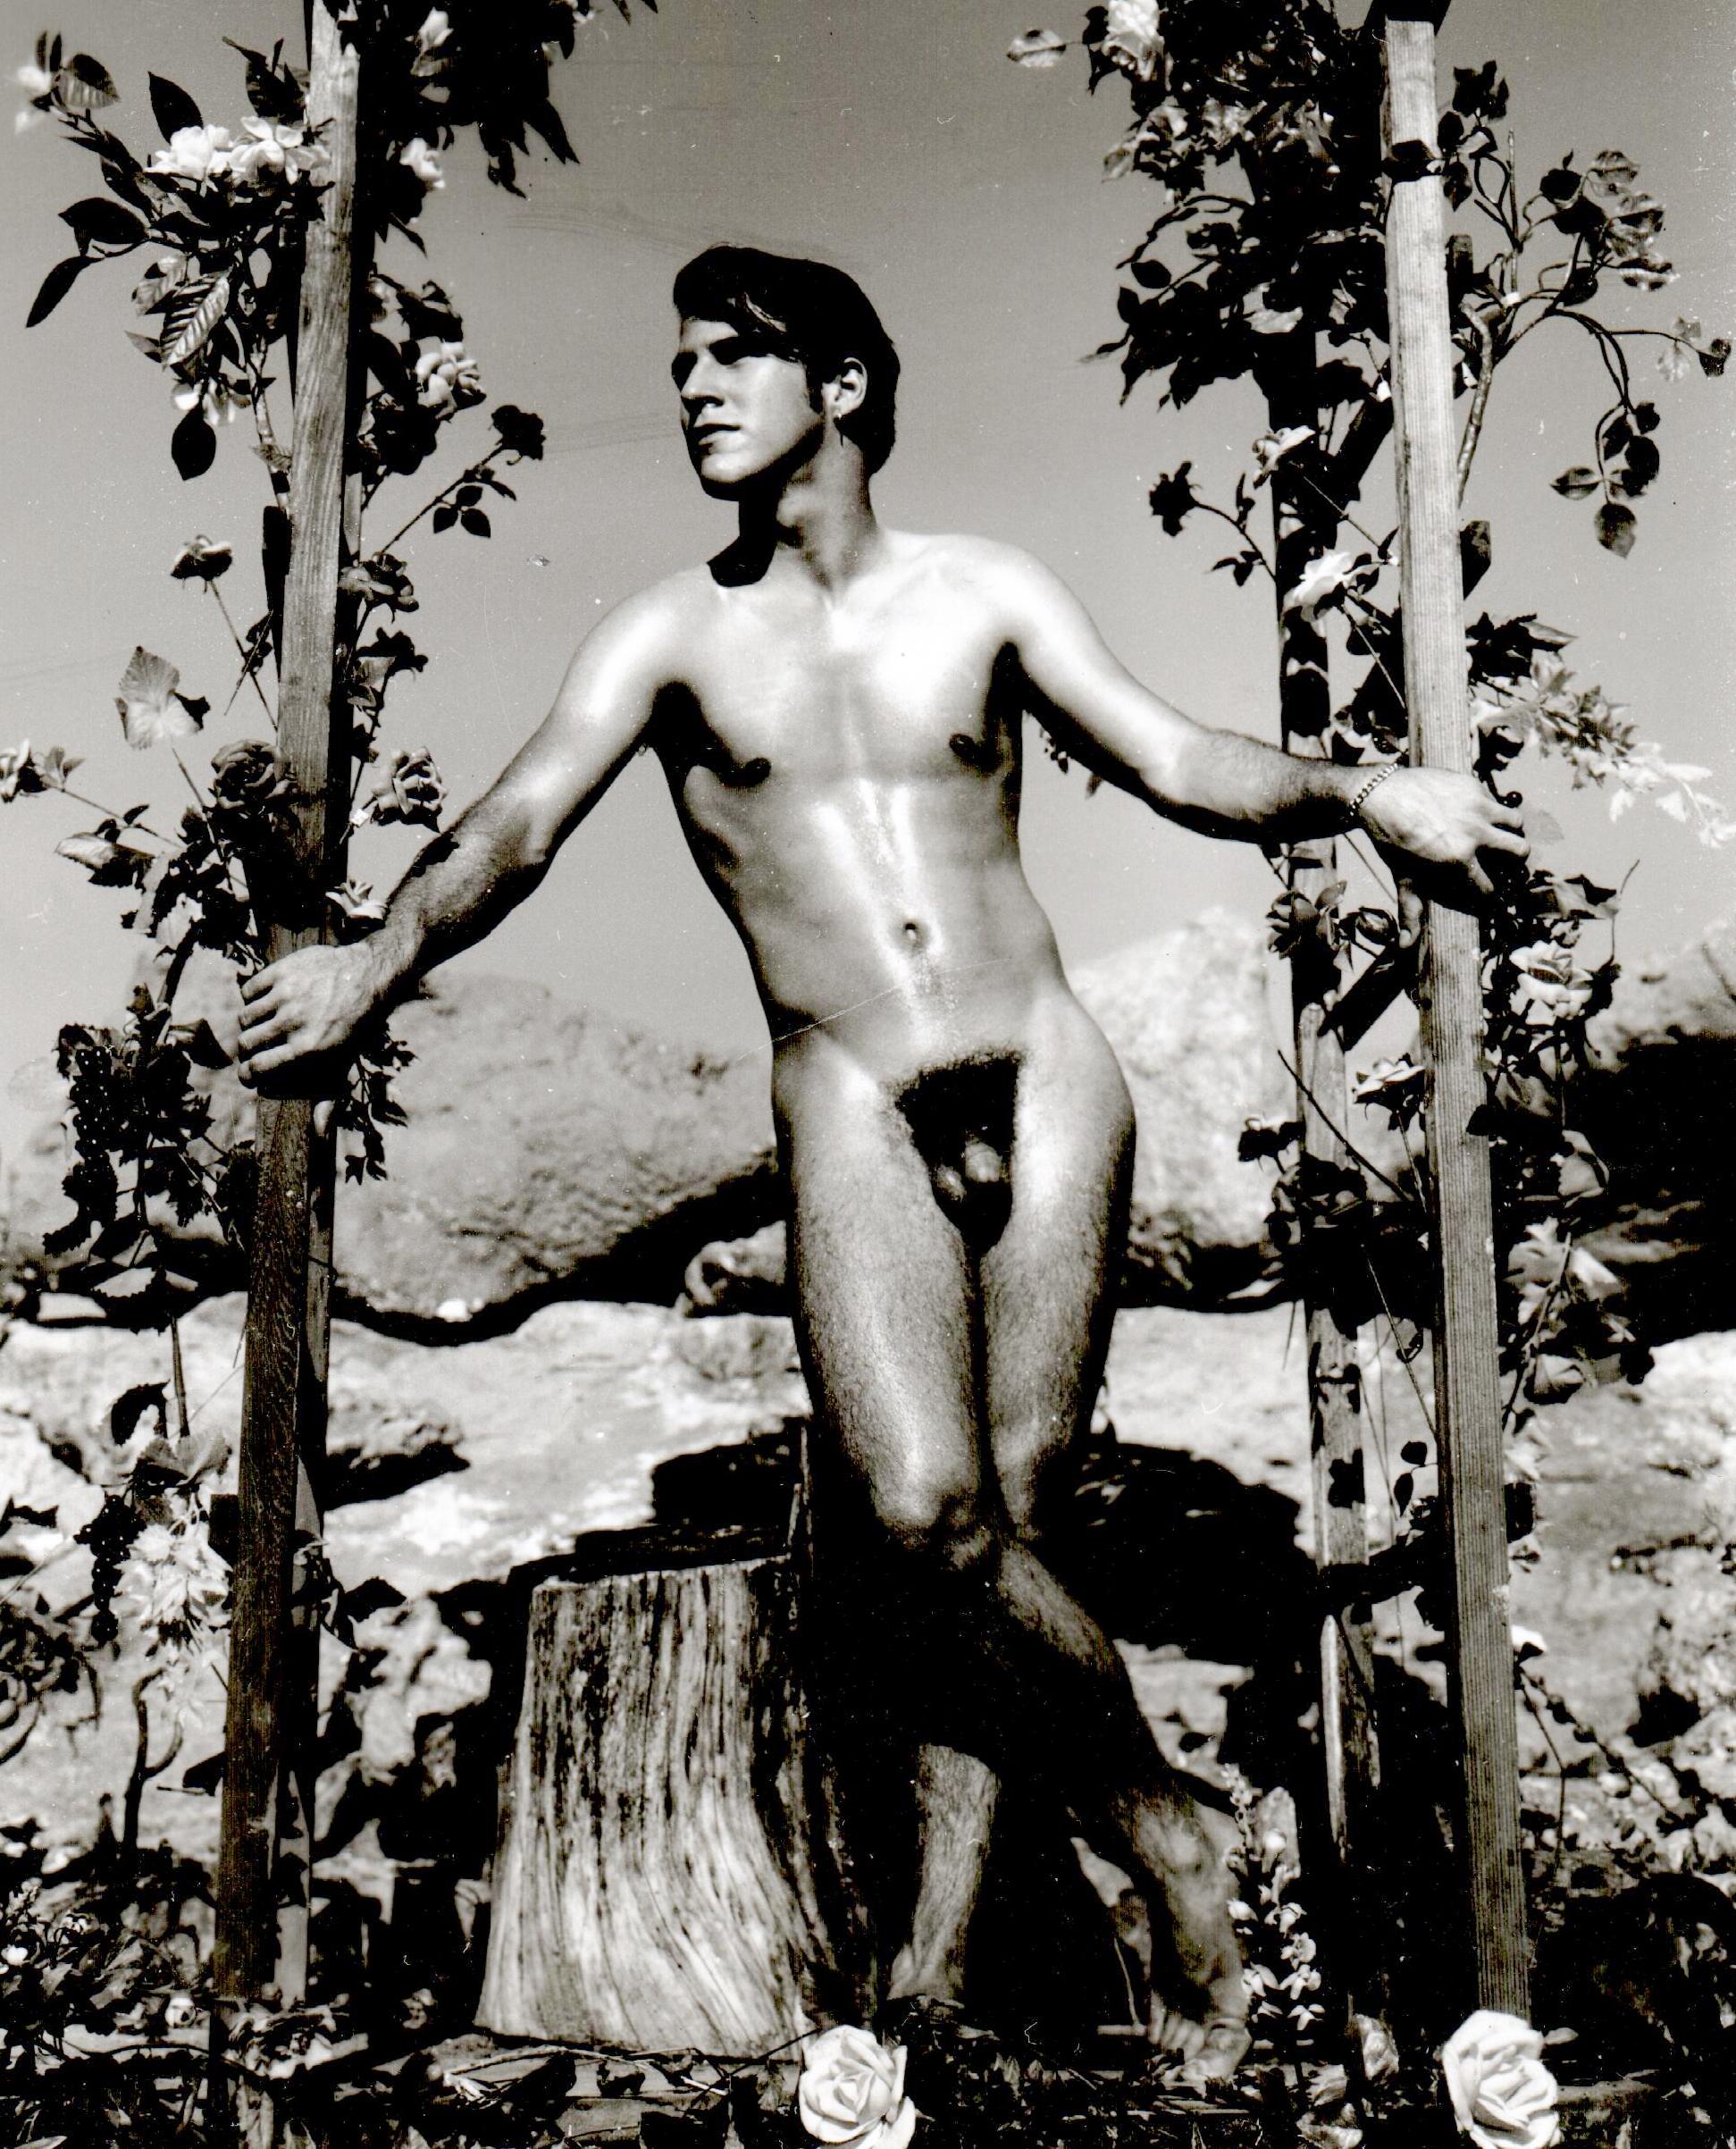 BOB MIZER
Gelatinesilberdruck
Original aus der Zeit, kein Nachdruck
5 x 4″ (12,8 x 10,4 cm)

Dieses zwischen 1962 und 1968 aufgenommene Foto zeigt eines der Modelle von Bob Mizer, das auf dem berüchtigten AMG-Gelände in Los Angeles